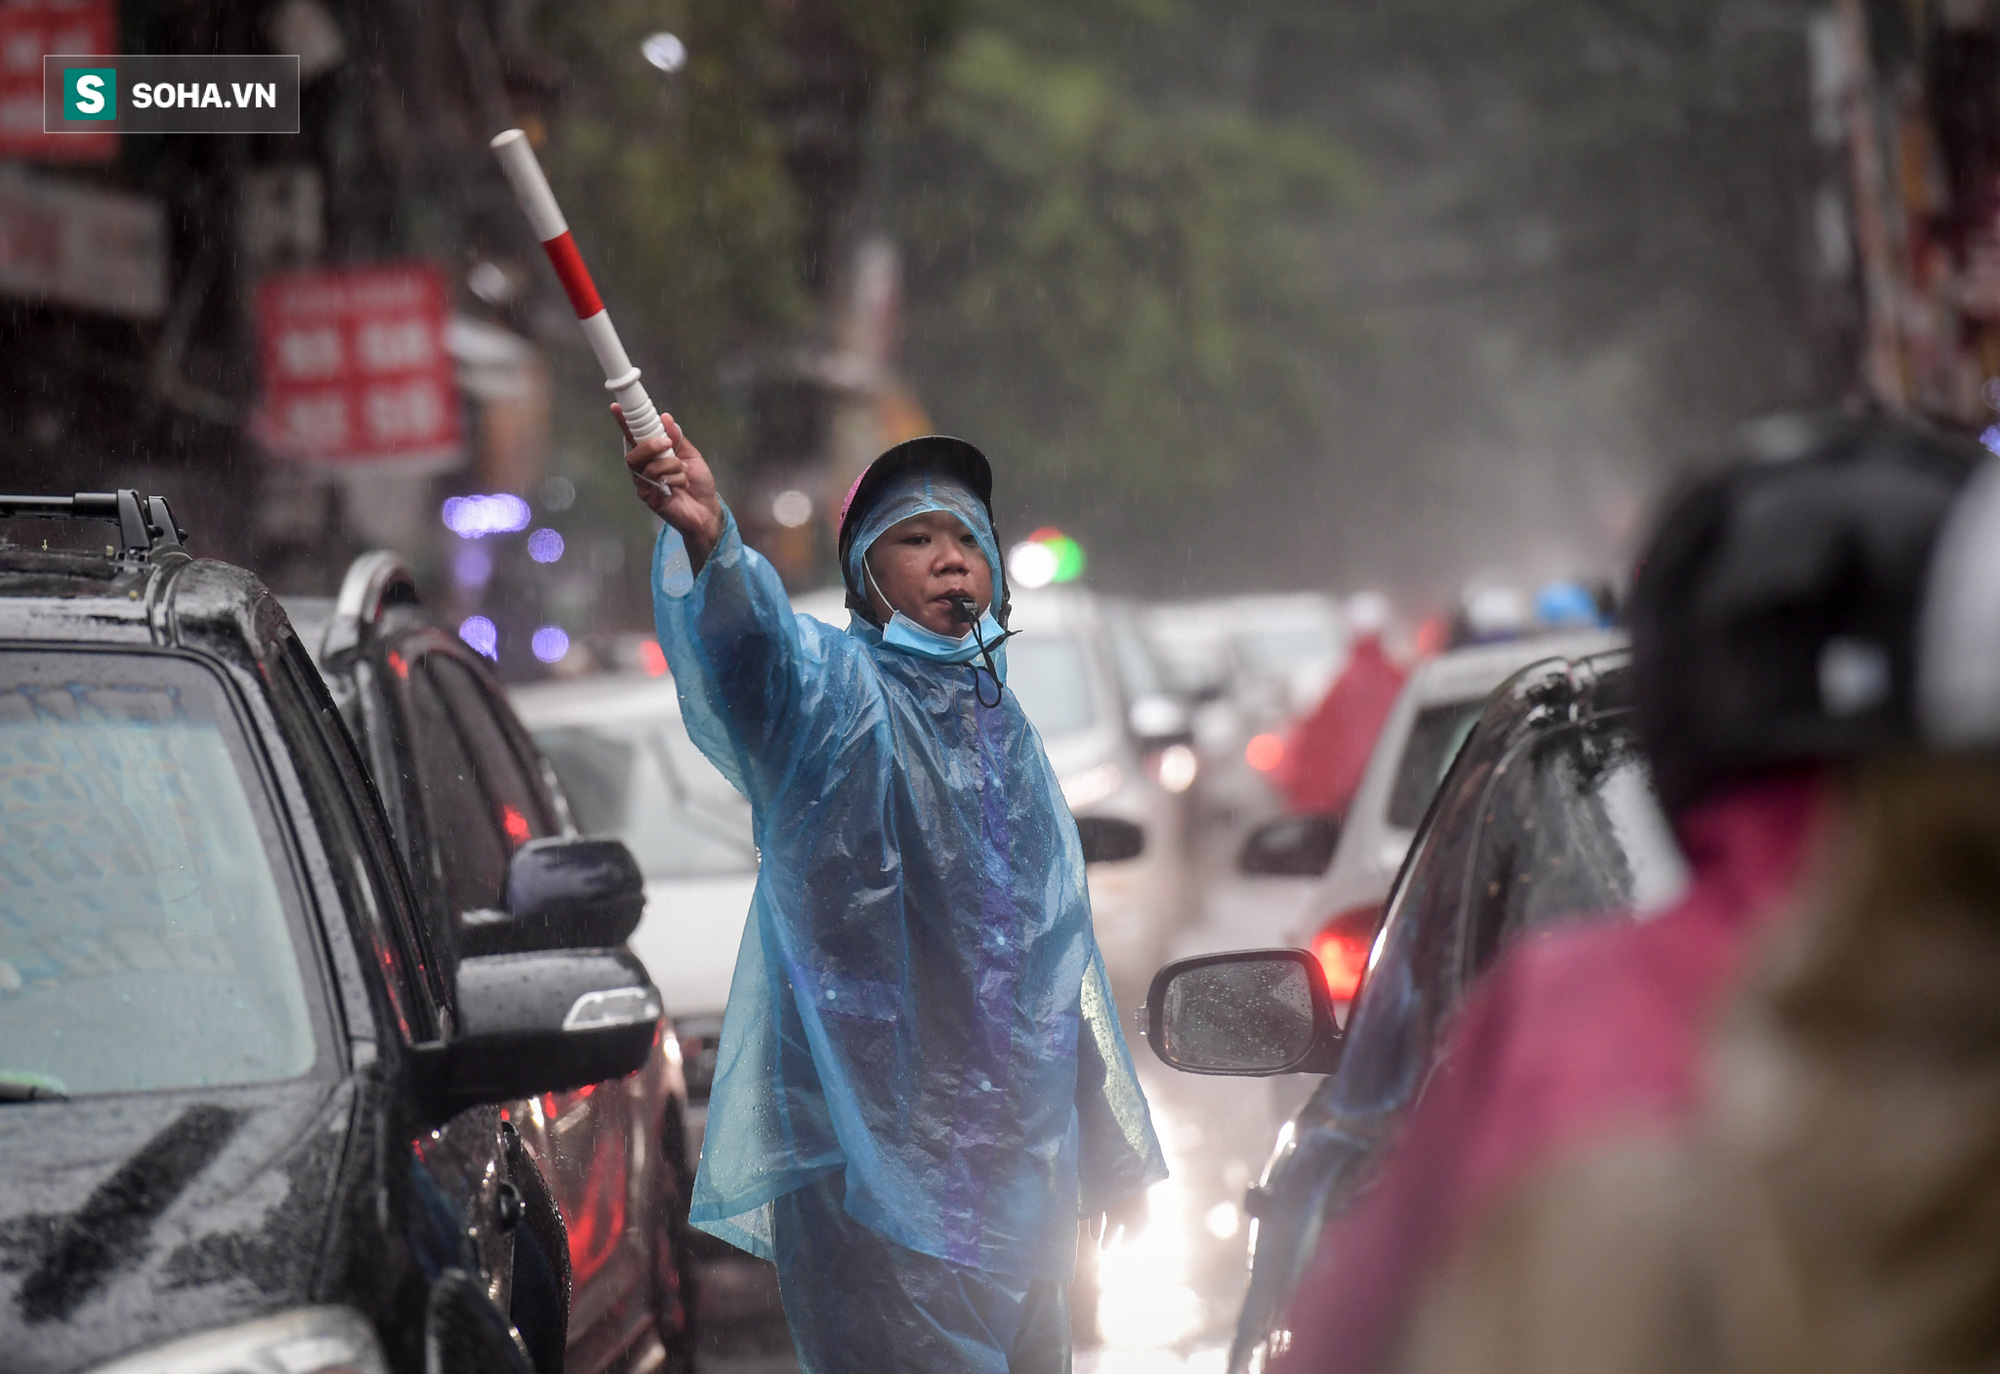 Đường phố Hà Nội tắc cứng trong mưa sáng đầu tuần, ô tô dàn hàng 6 chiếm hết lòng đường - Ảnh 9.